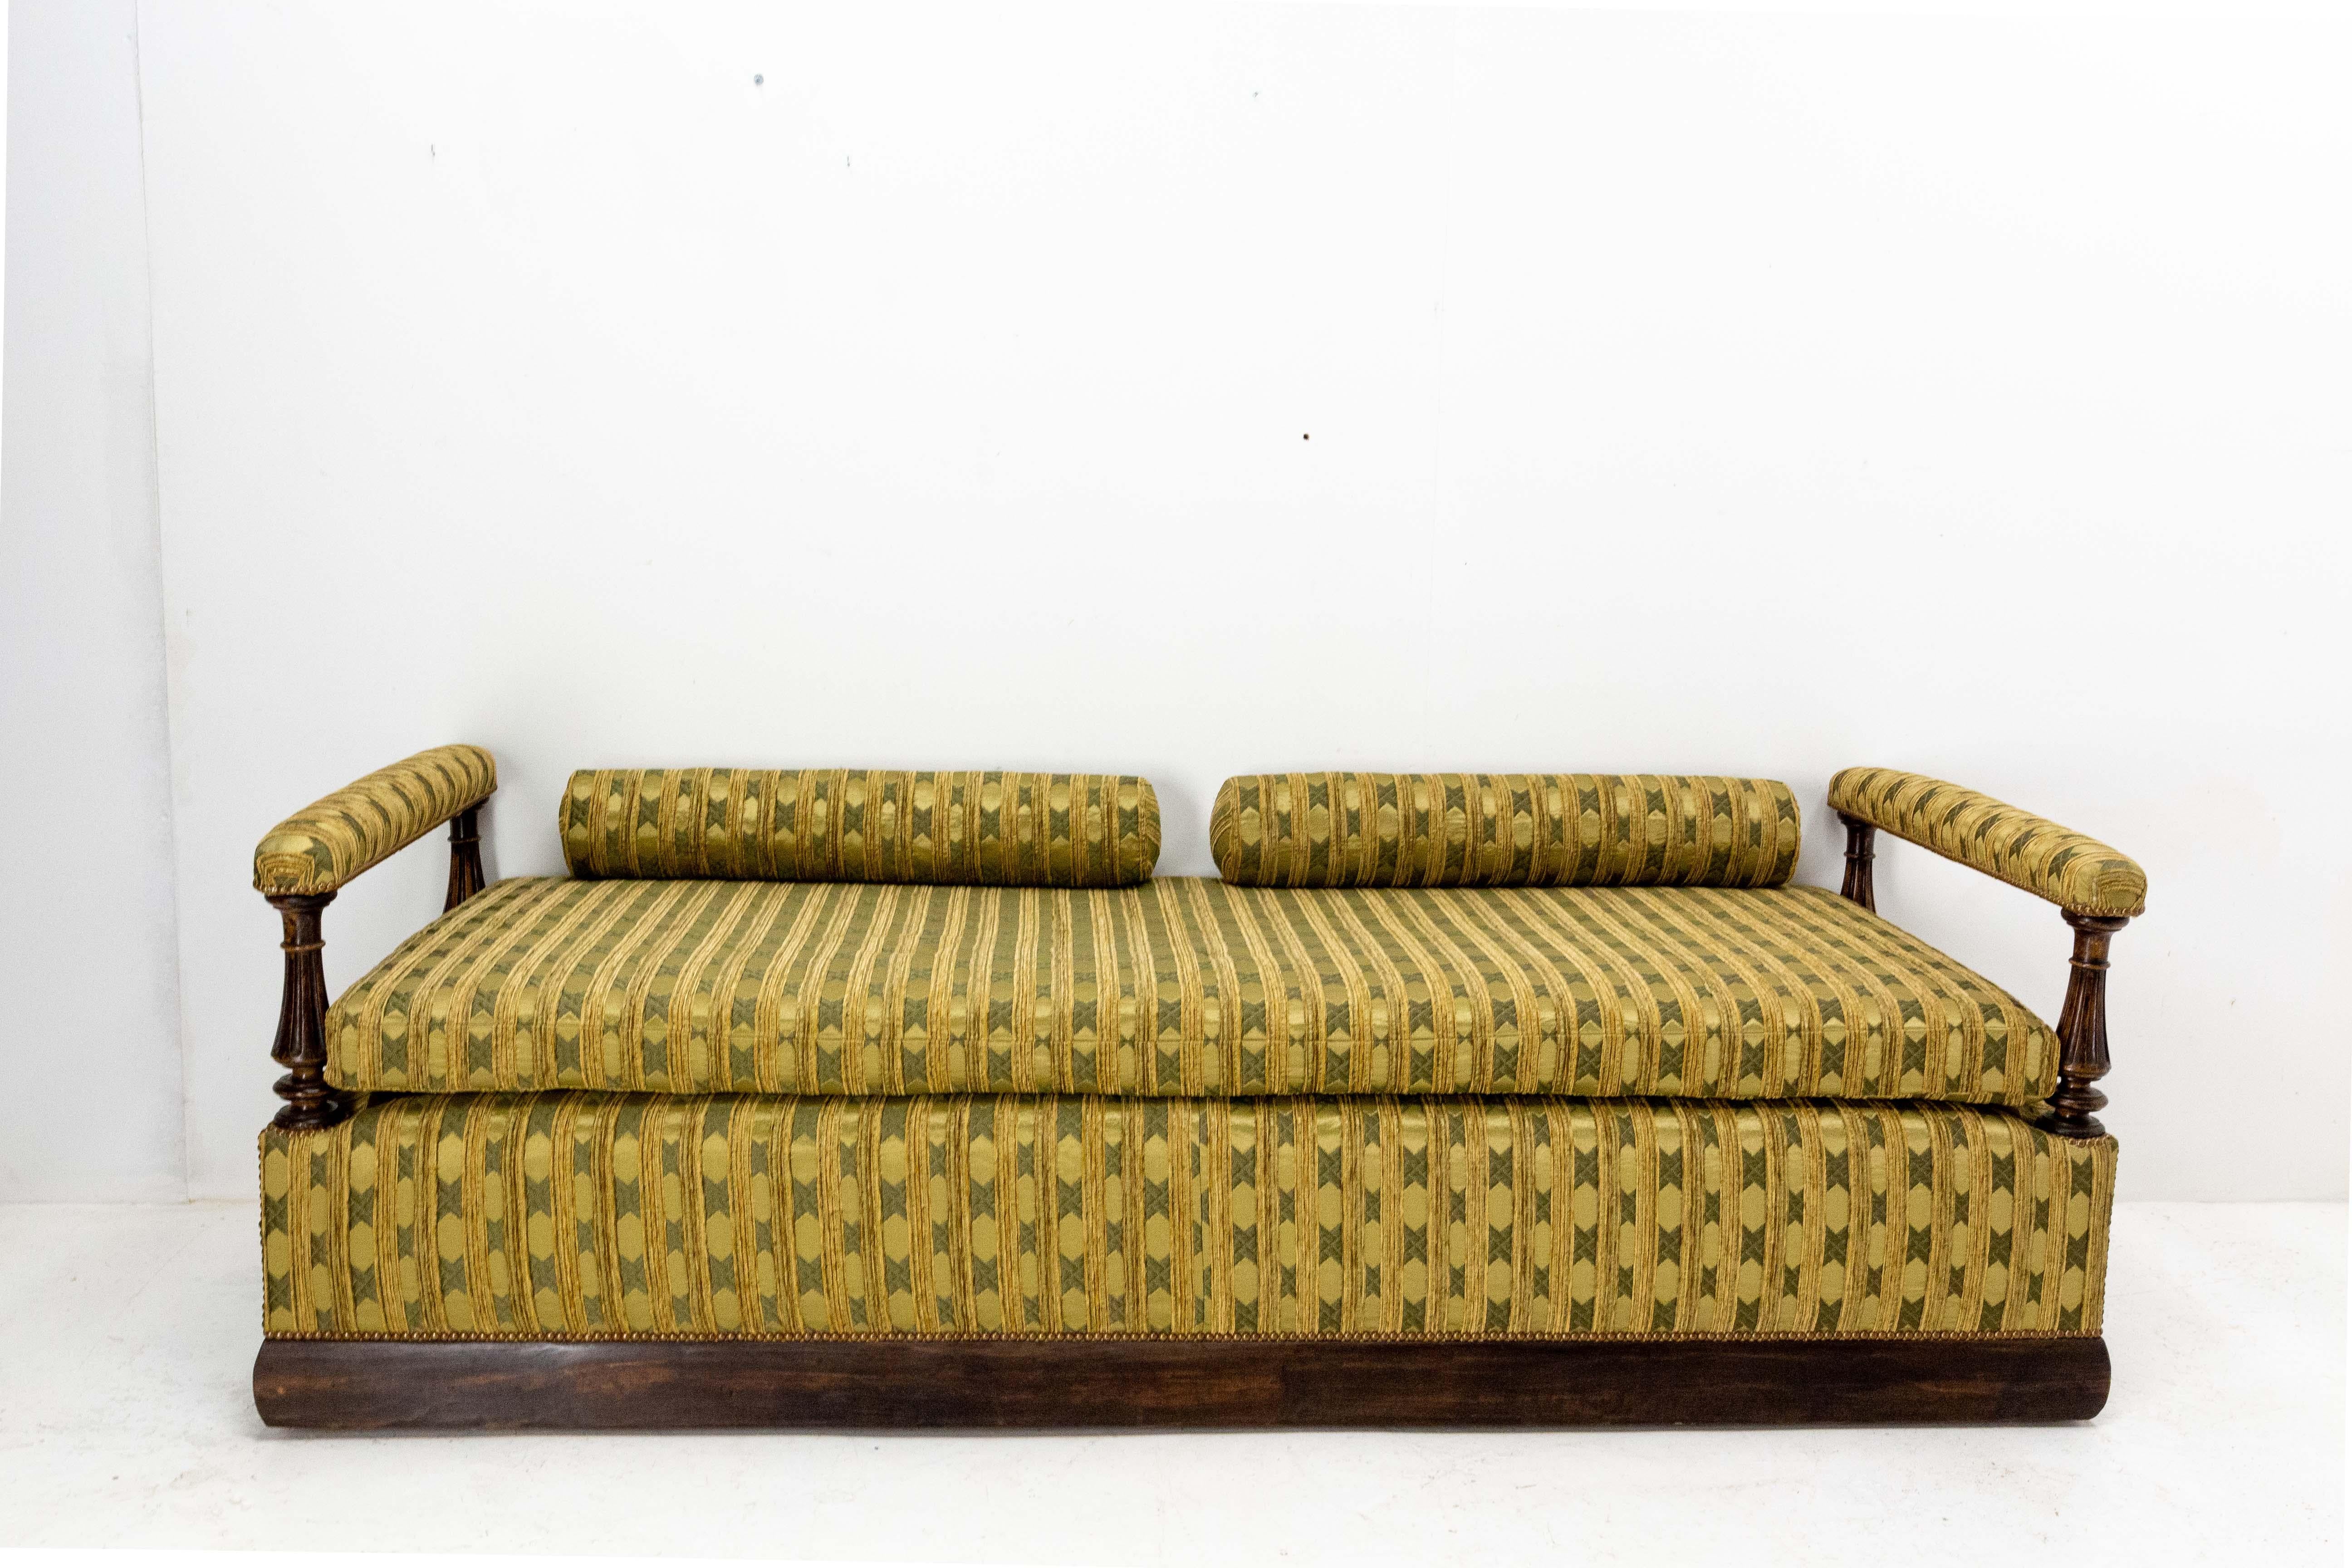 Elegantes Napoleon-III-Bankett oder -Sofa aus Nussbaumholz.
Frankreich um 1890,
Die Polsterung und der Stoff wurden kürzlich ausgetauscht.
Sehr guter antiker Zustand. Ein kleiner Fleck auf dem Stoff (siehe Foto).

Versand:
L219 P83 H70 cm 80